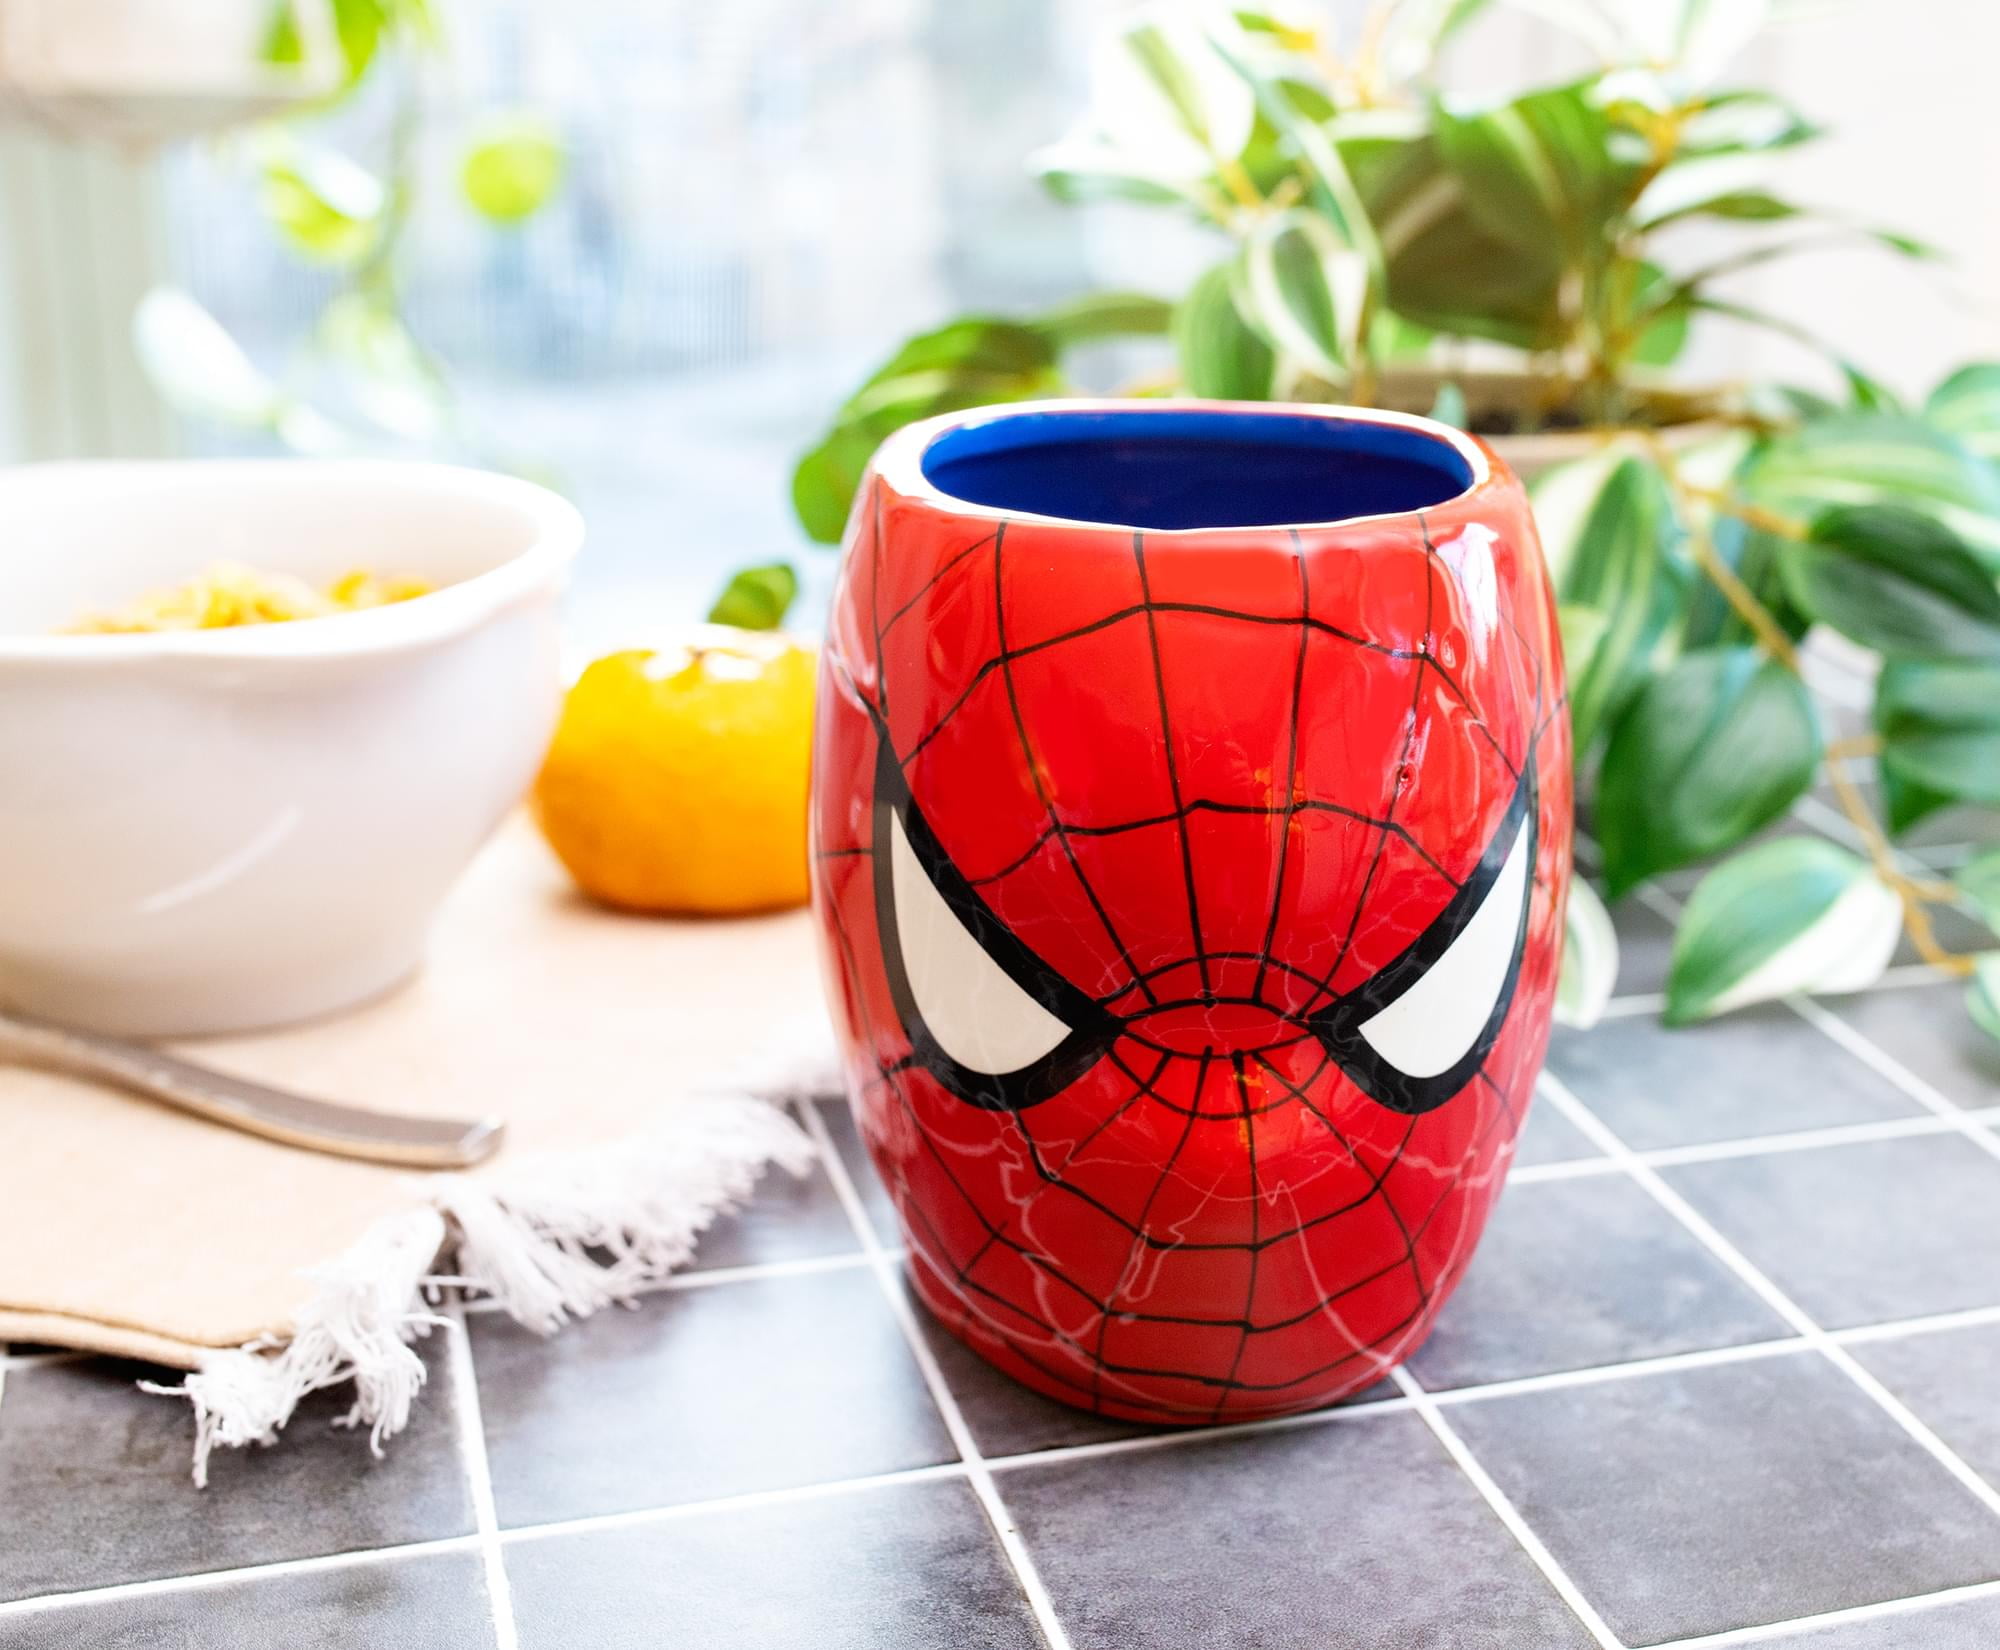 Spider-Man Marvel 20 Oz. Sculpted Ceramic Mug